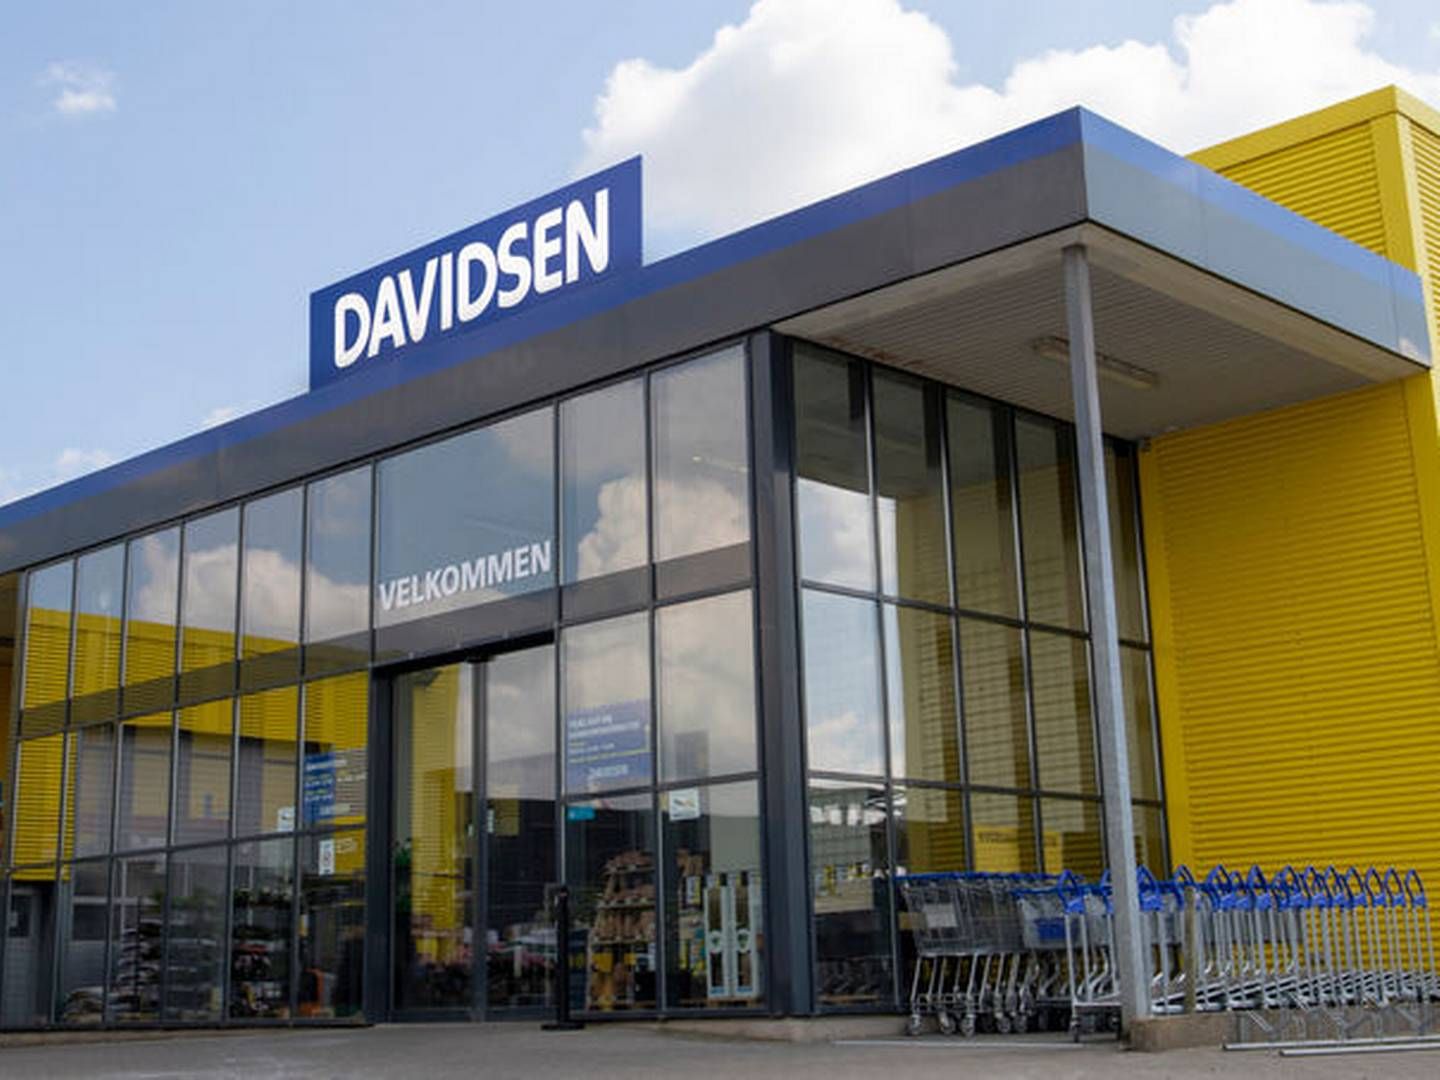 Davidsens Tømmerhandel har 23 butikker fordelt i Danmark og en i Grønland. | Photo: Davidsen Tømmerhandel/pr